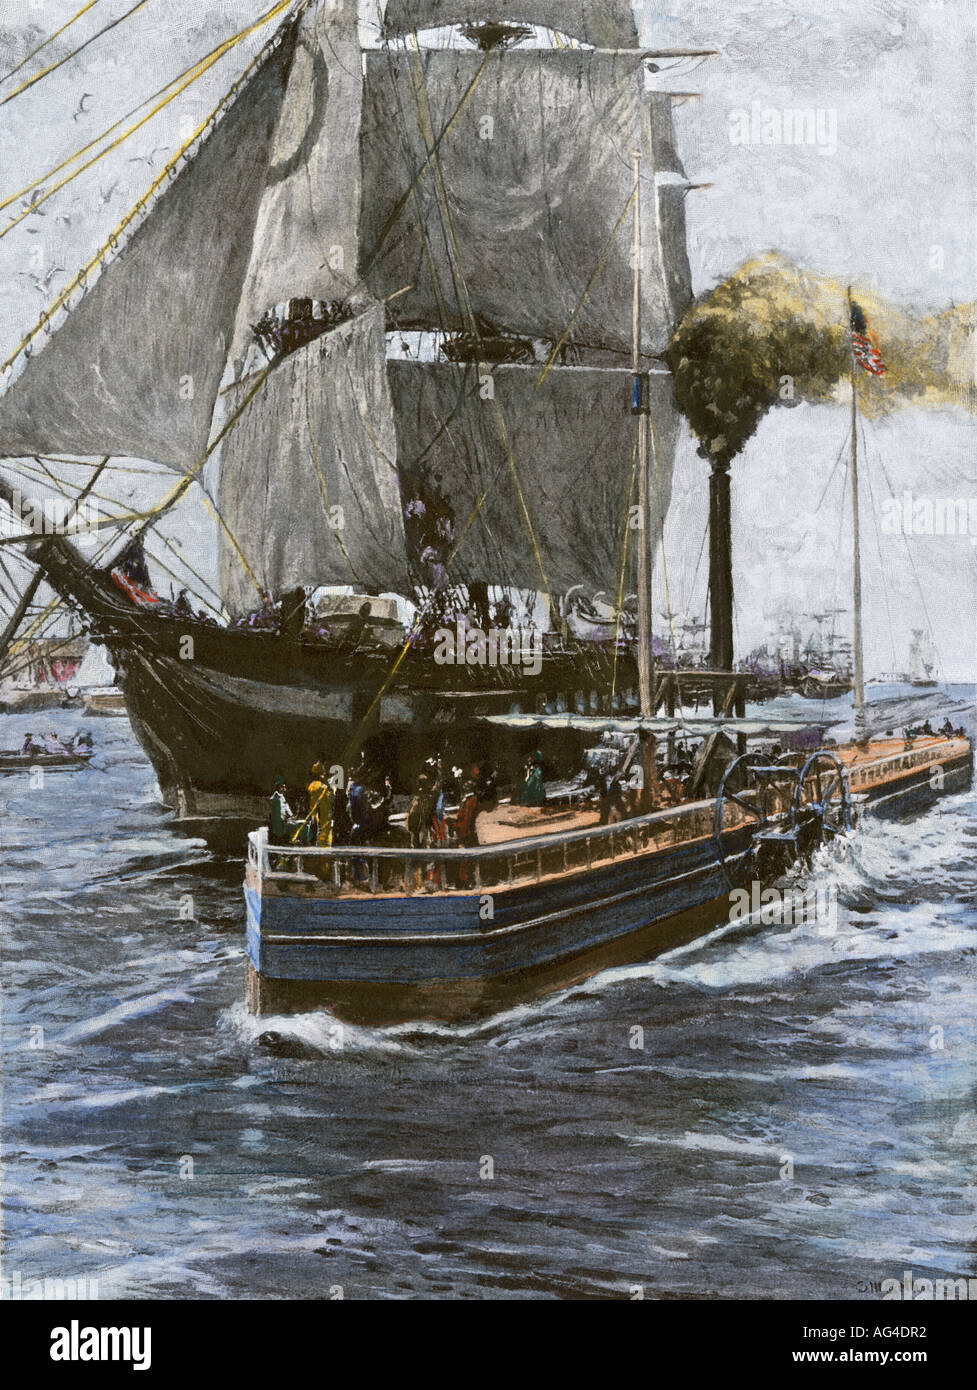 Erste Reise von Steamboat Clermont auf dem Hudson River in 1807. Handcolorierte halftone einer Abbildung Stockfoto